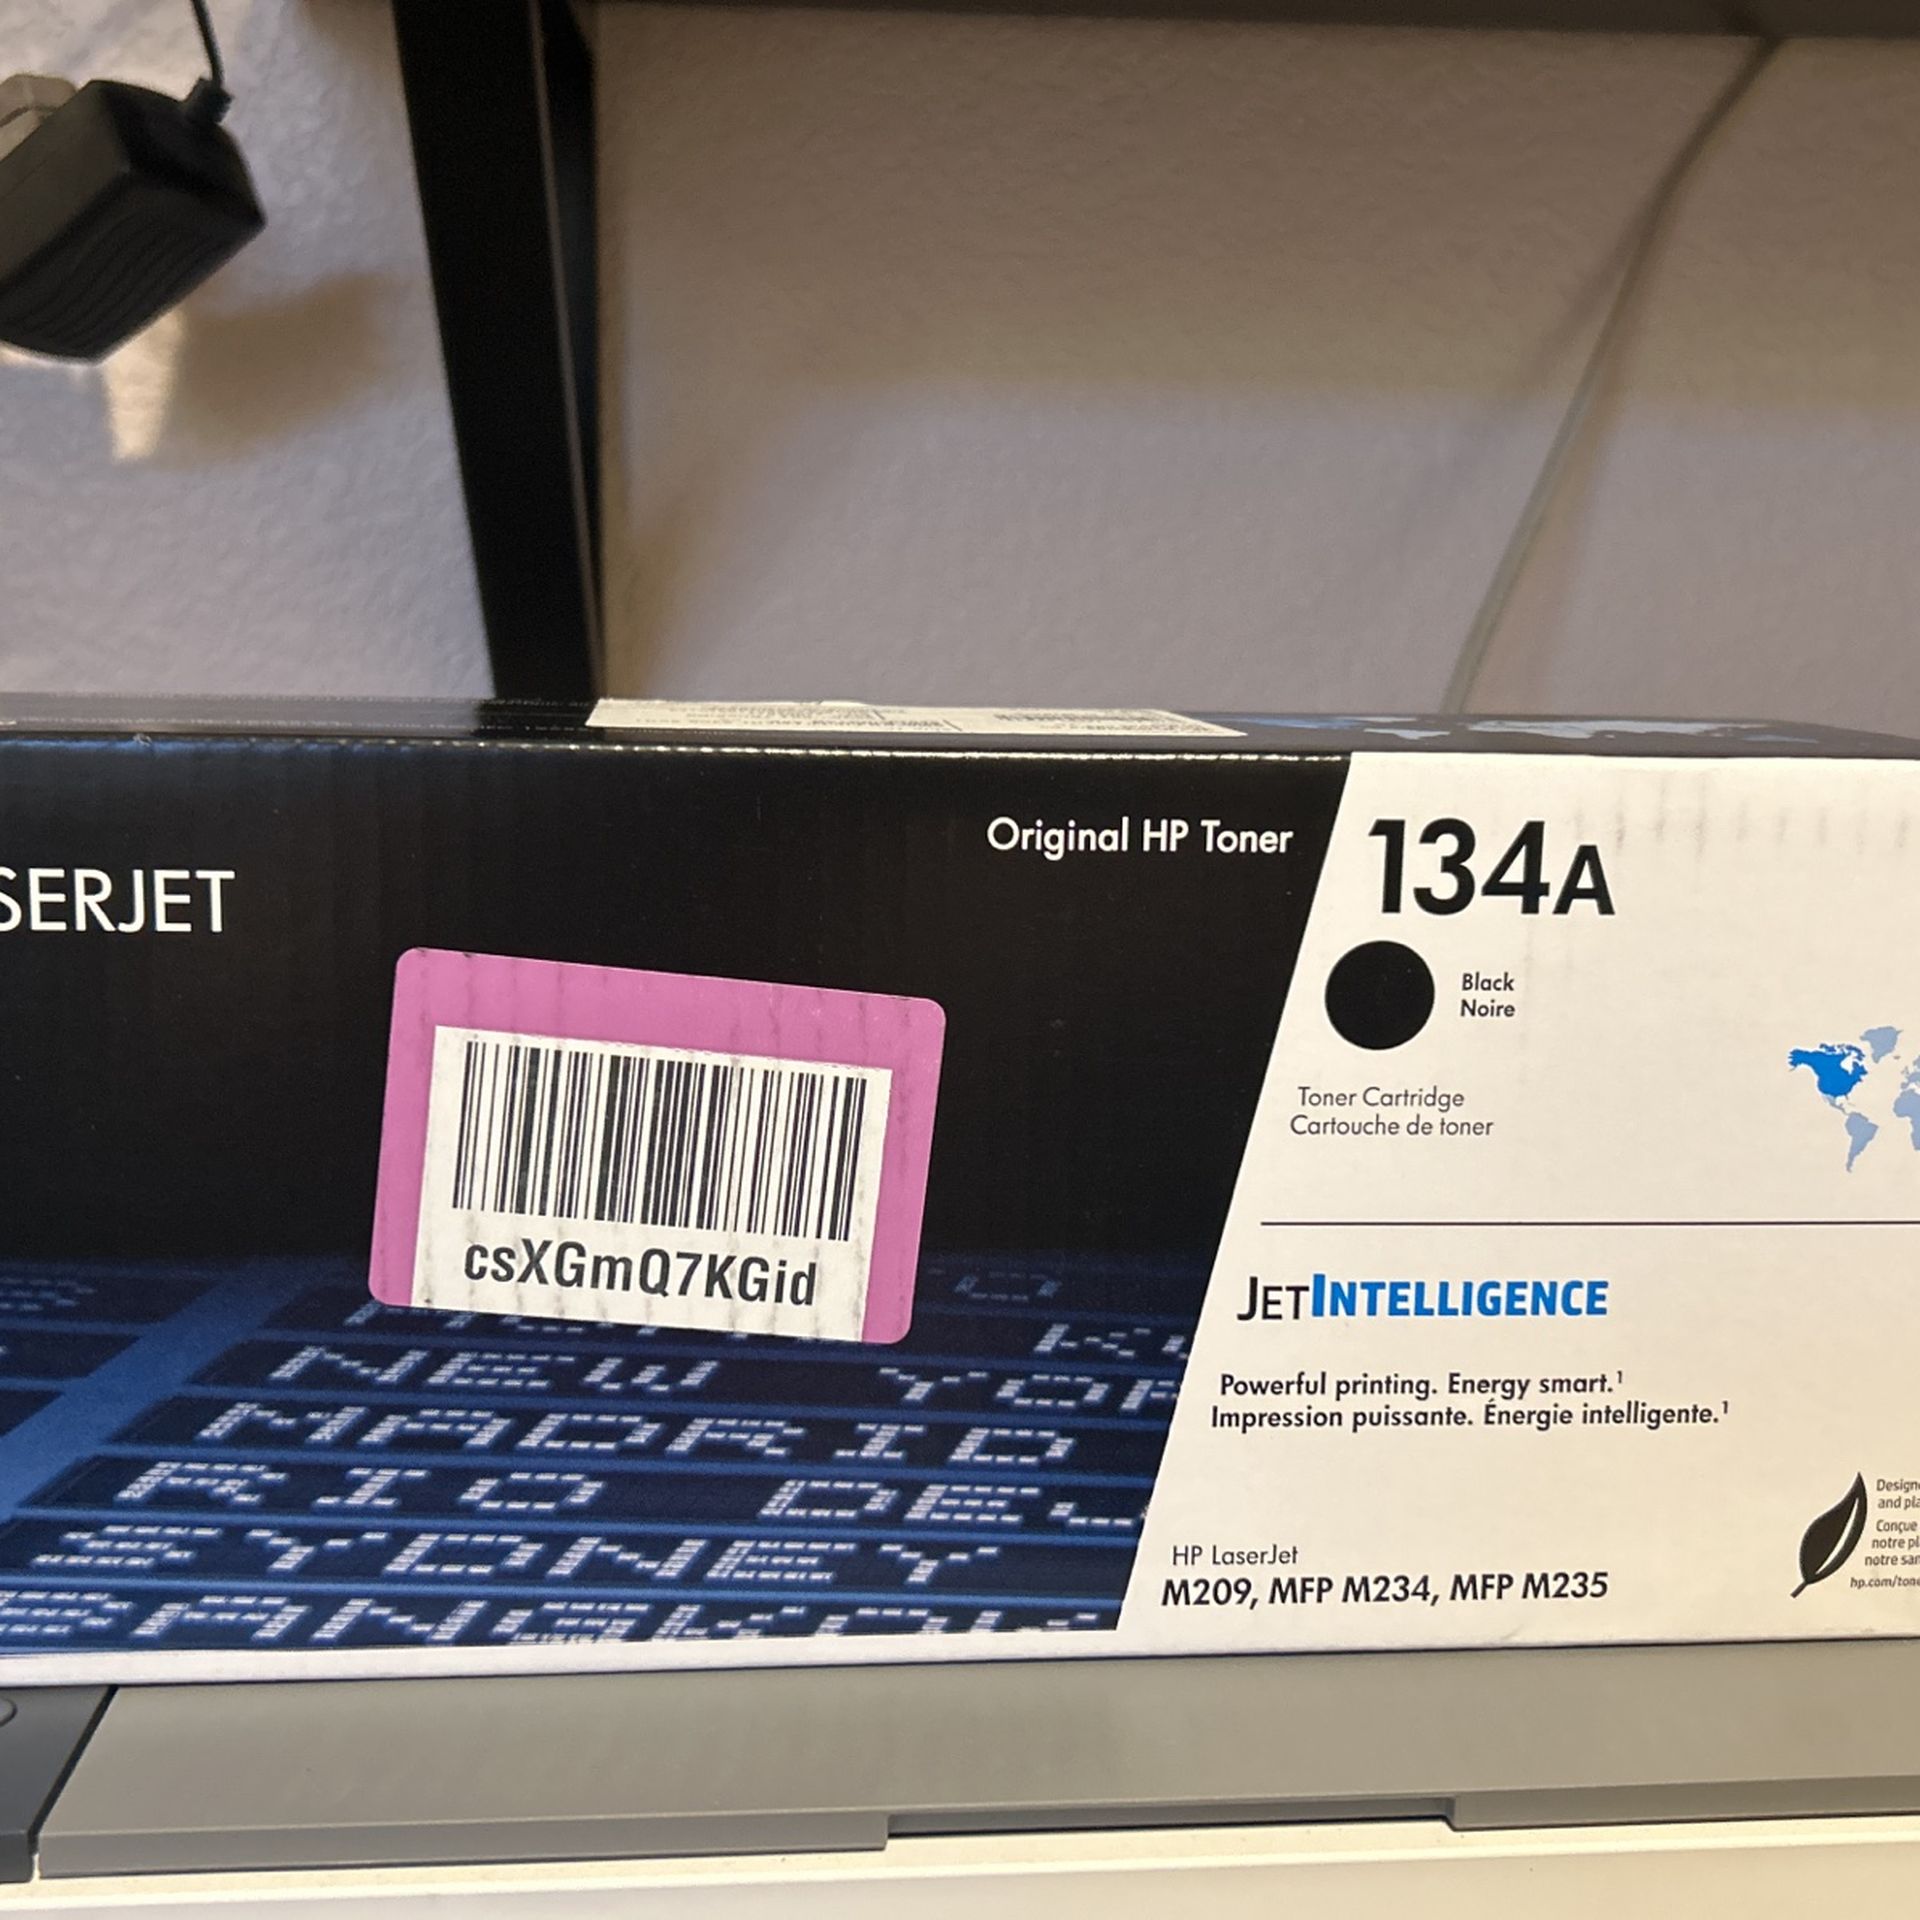 Brand New in Box Genuine HP Brand Laserjet Toner Cartridge